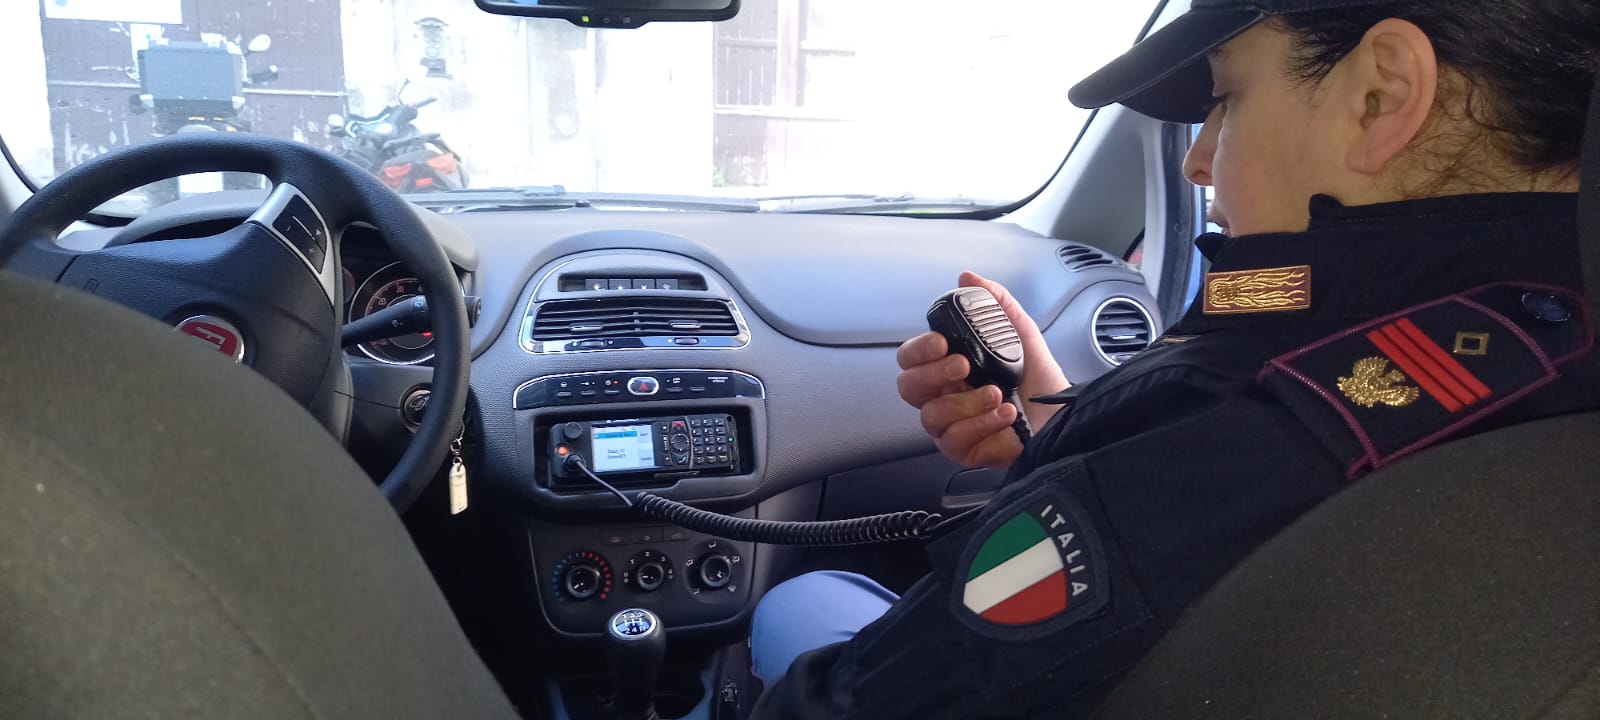 Catania, sfugge al controllo ma impatta con altri 3 veicoli: incastrato per una “dimenticanza”